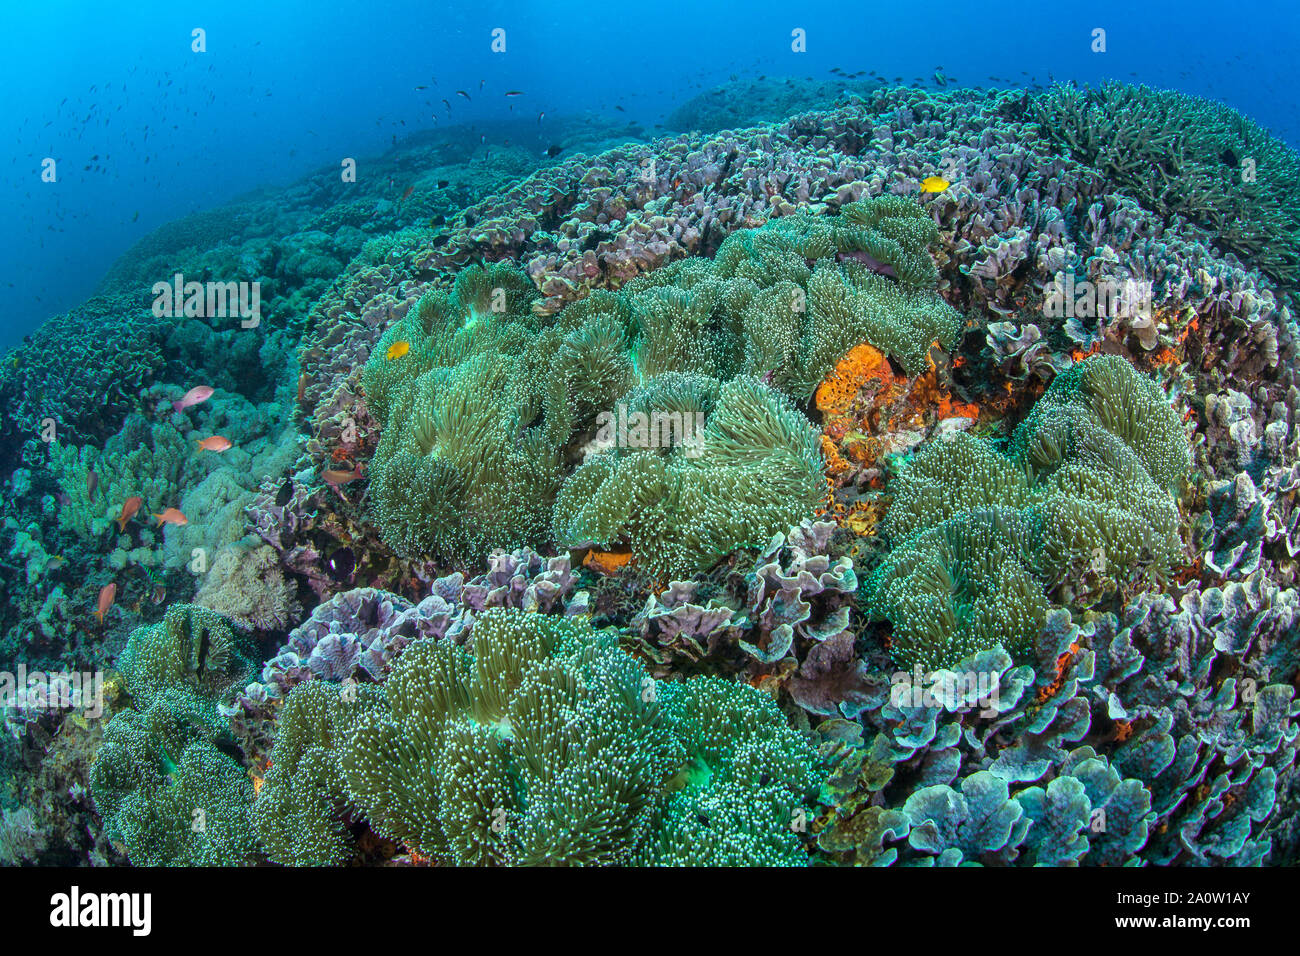 Colonia di magnifiche anemomes (Heteractis magnifica) con verde fluorescente tentacoli che copre uno spiovente di reef. Nusa Lembongan, Bali, Indonesia. Foto Stock